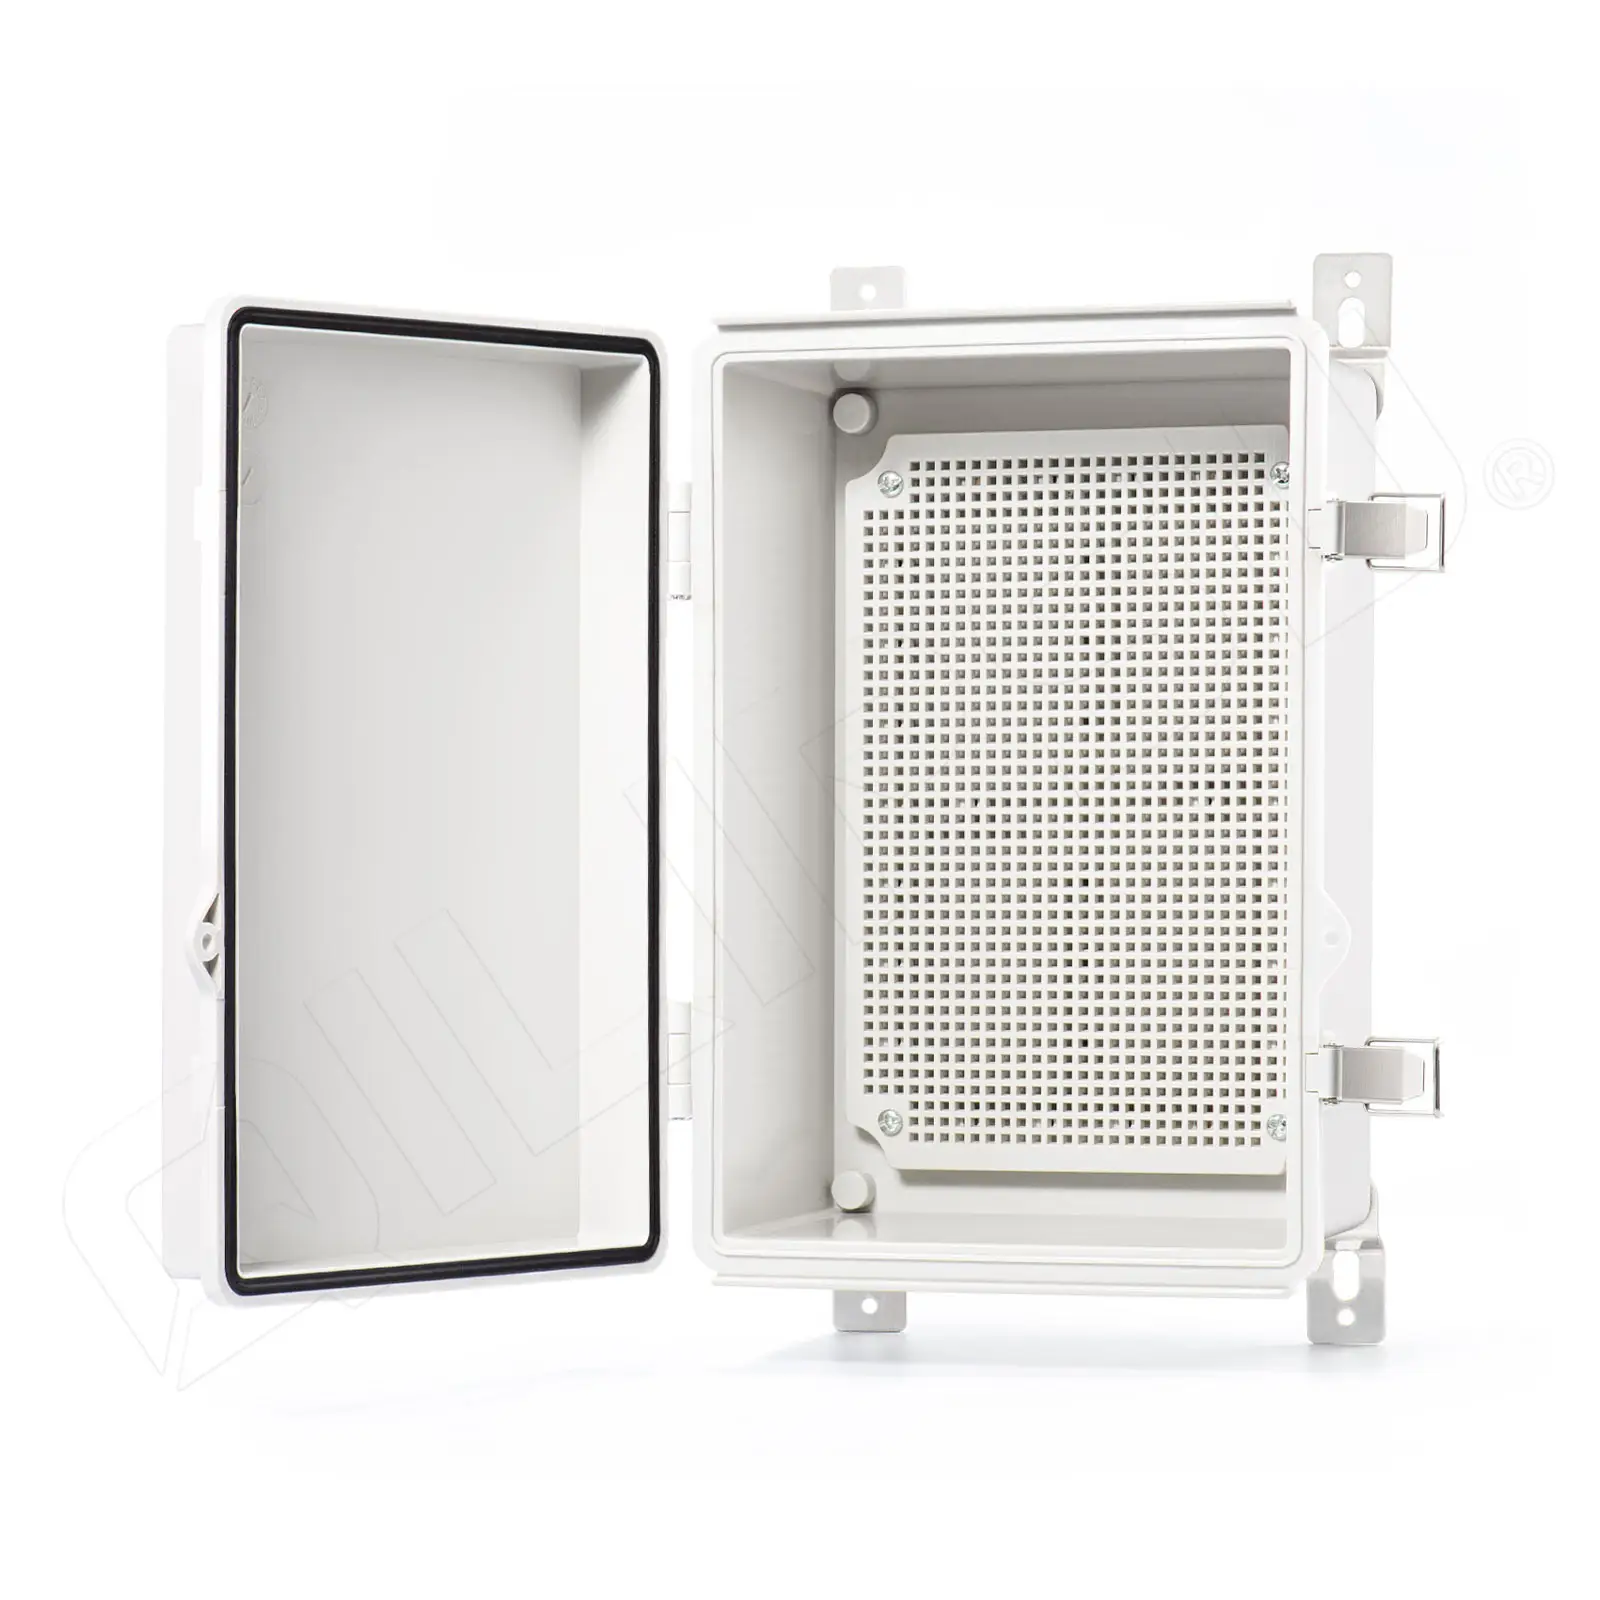 Caixa de junção IP67 para exterior, caixa elétrica Qilipsou, caixa de plástico ABS com dobradiças, porta cinza para projetos de 11,2 "x 7,7" x 5,1